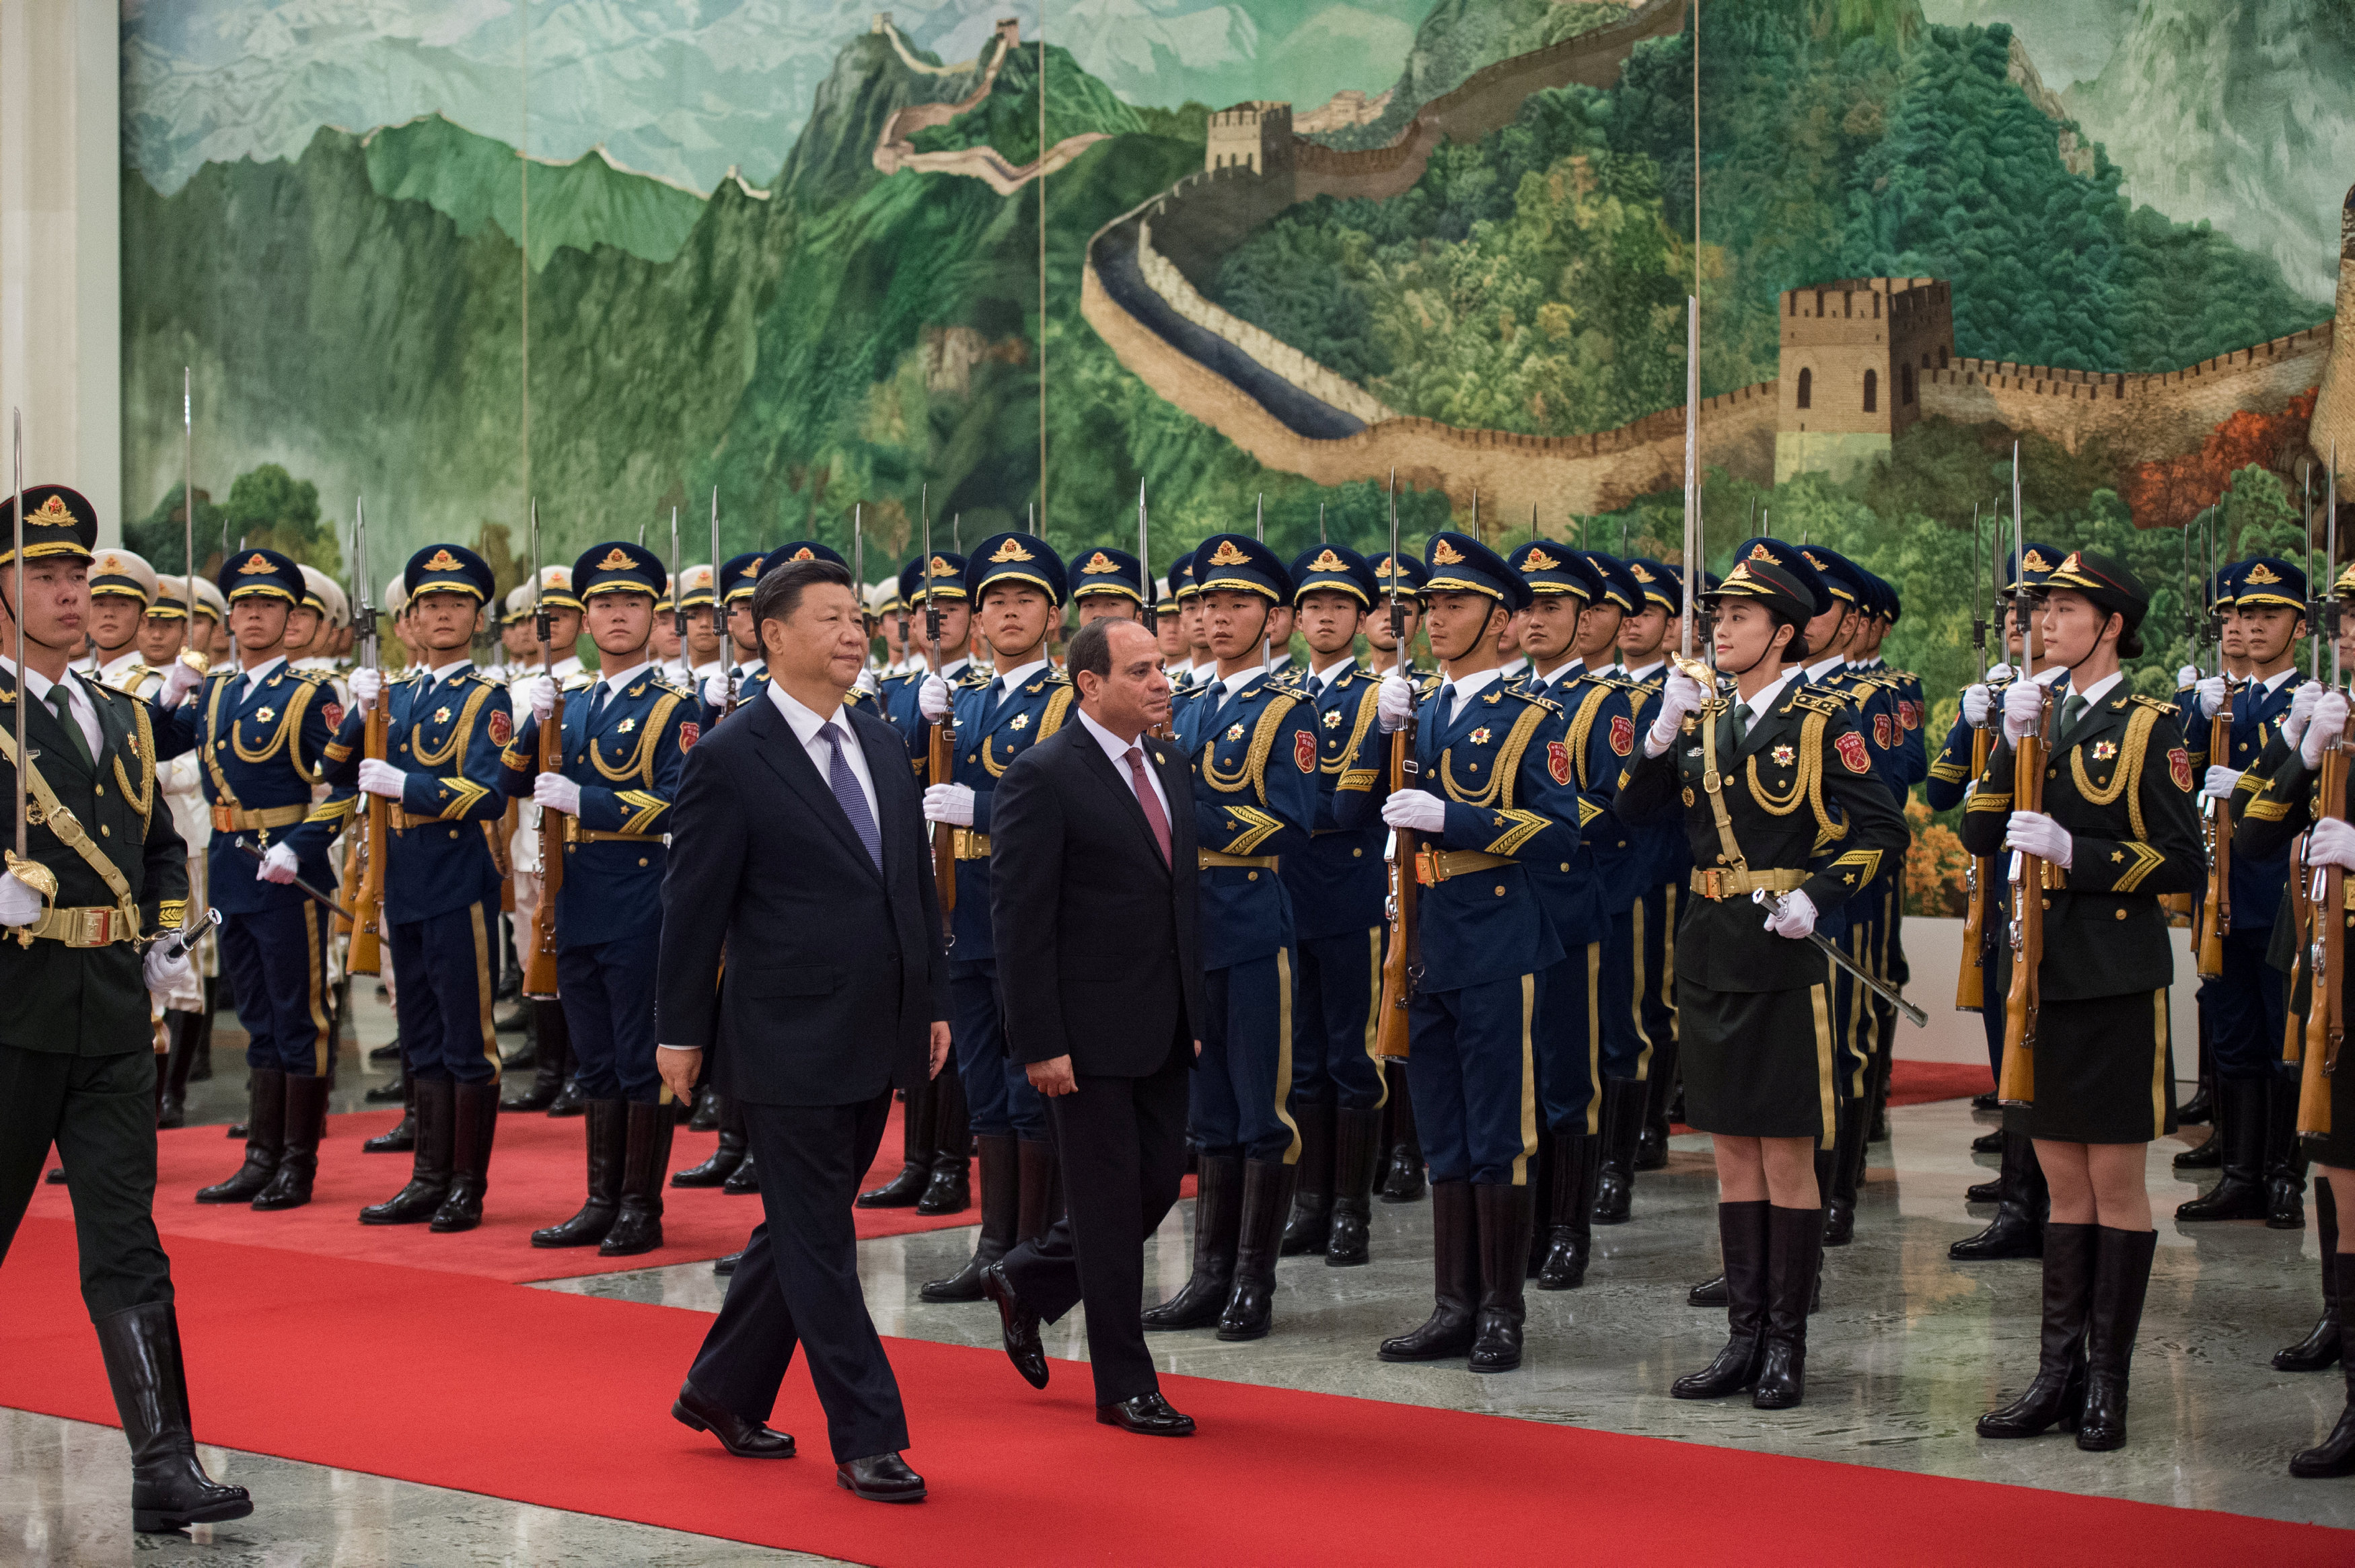 مراسم استقبال رسمية للسيسى فى بكين  (2)